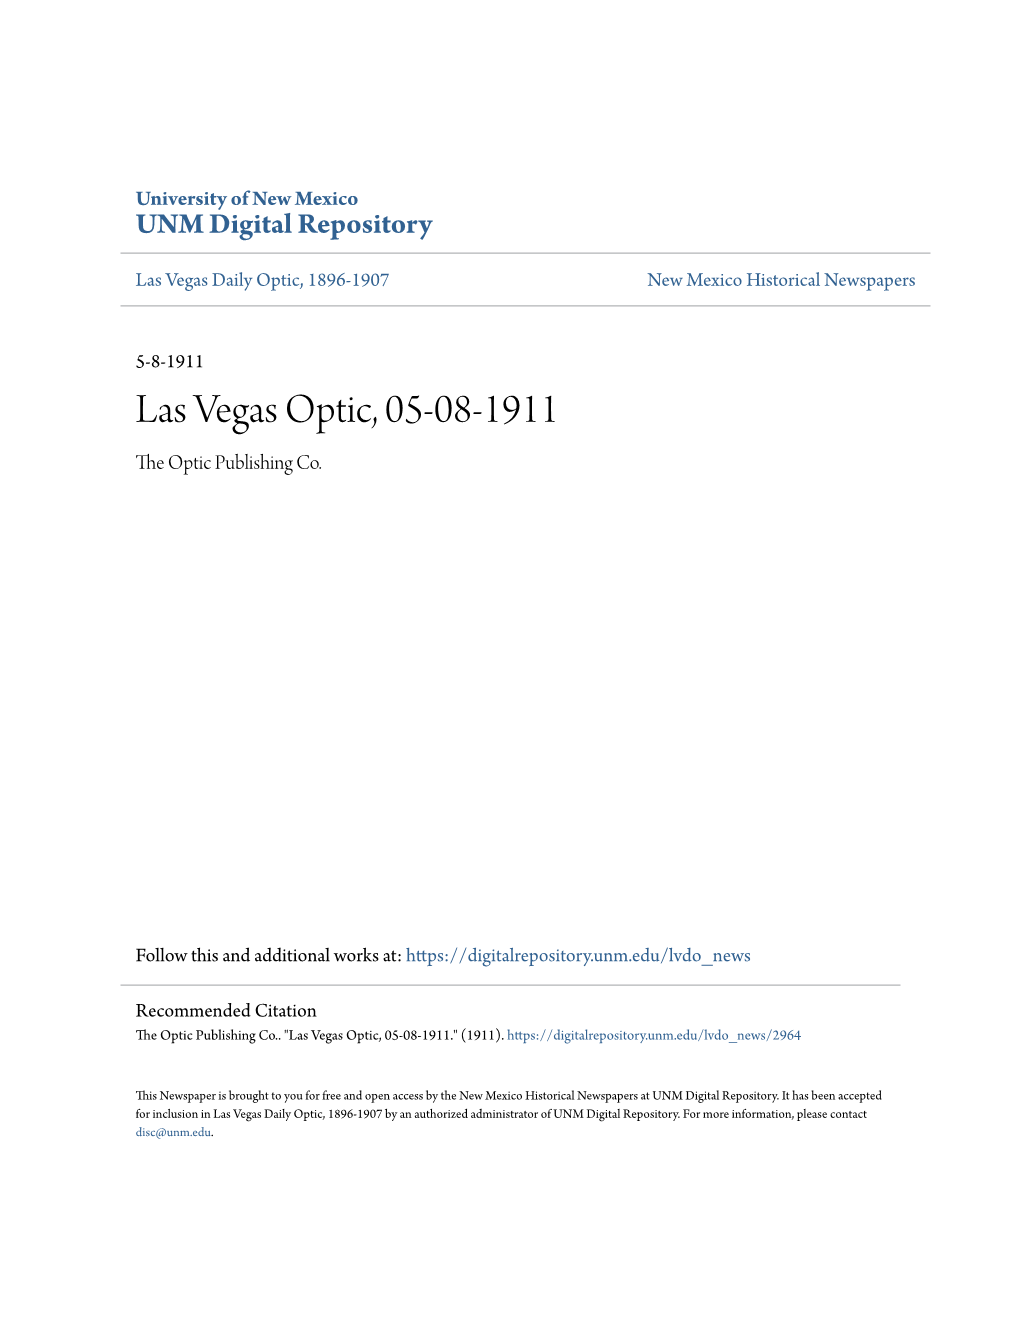 Las Vegas Optic, 05-08-1911 the Optic Publishing Co